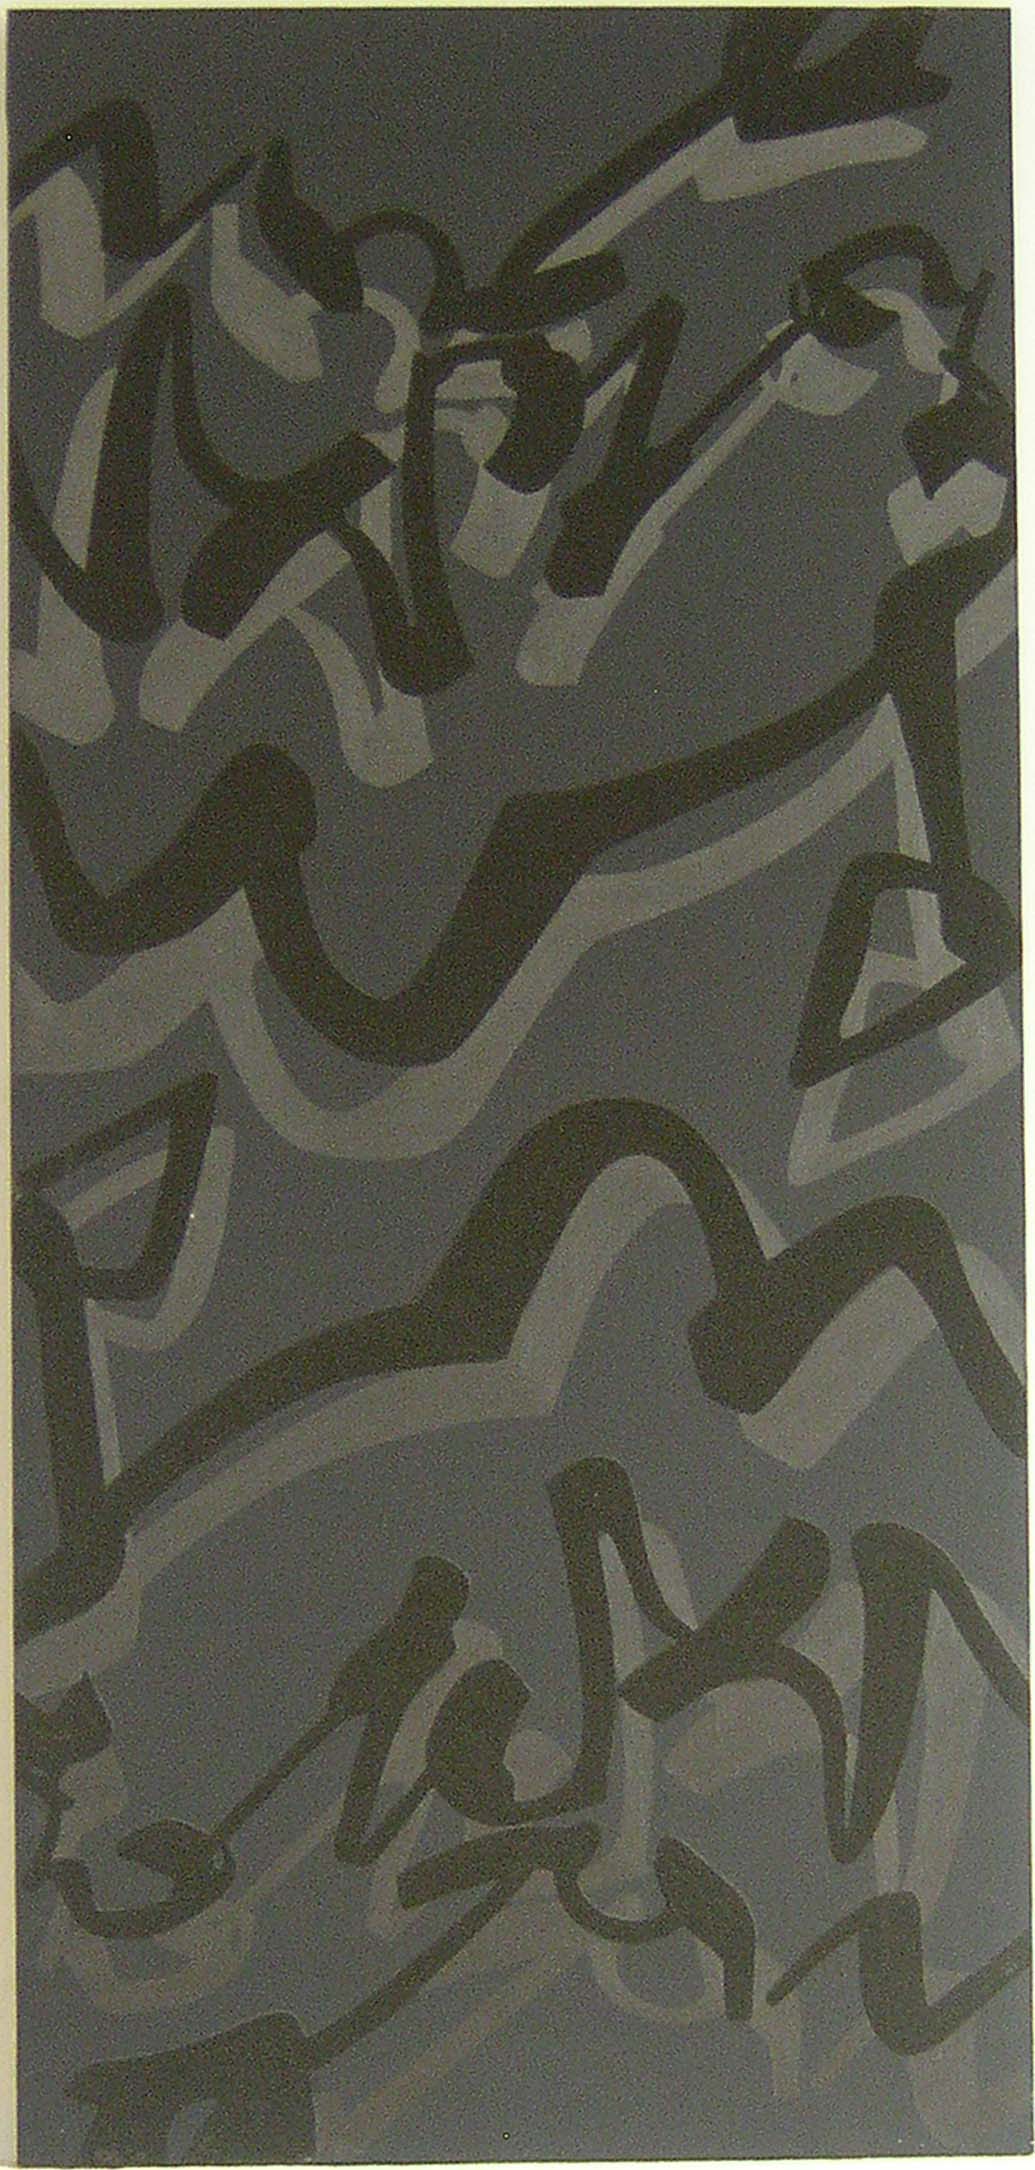 Evento. 1988, cm 160 x 75, Acrilico e sabbia su tela